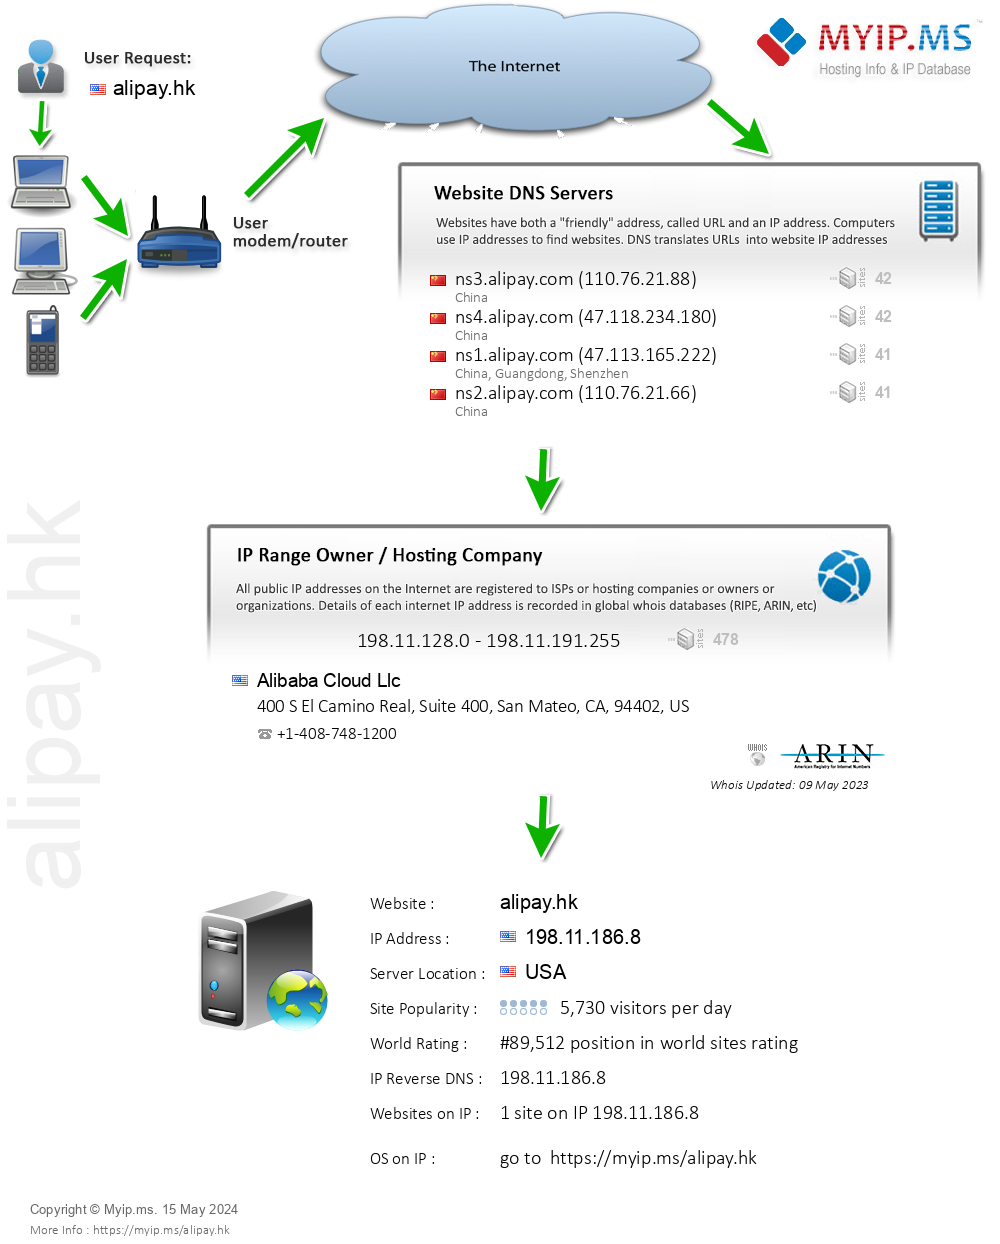 Alipay.hk - Website Hosting Visual IP Diagram